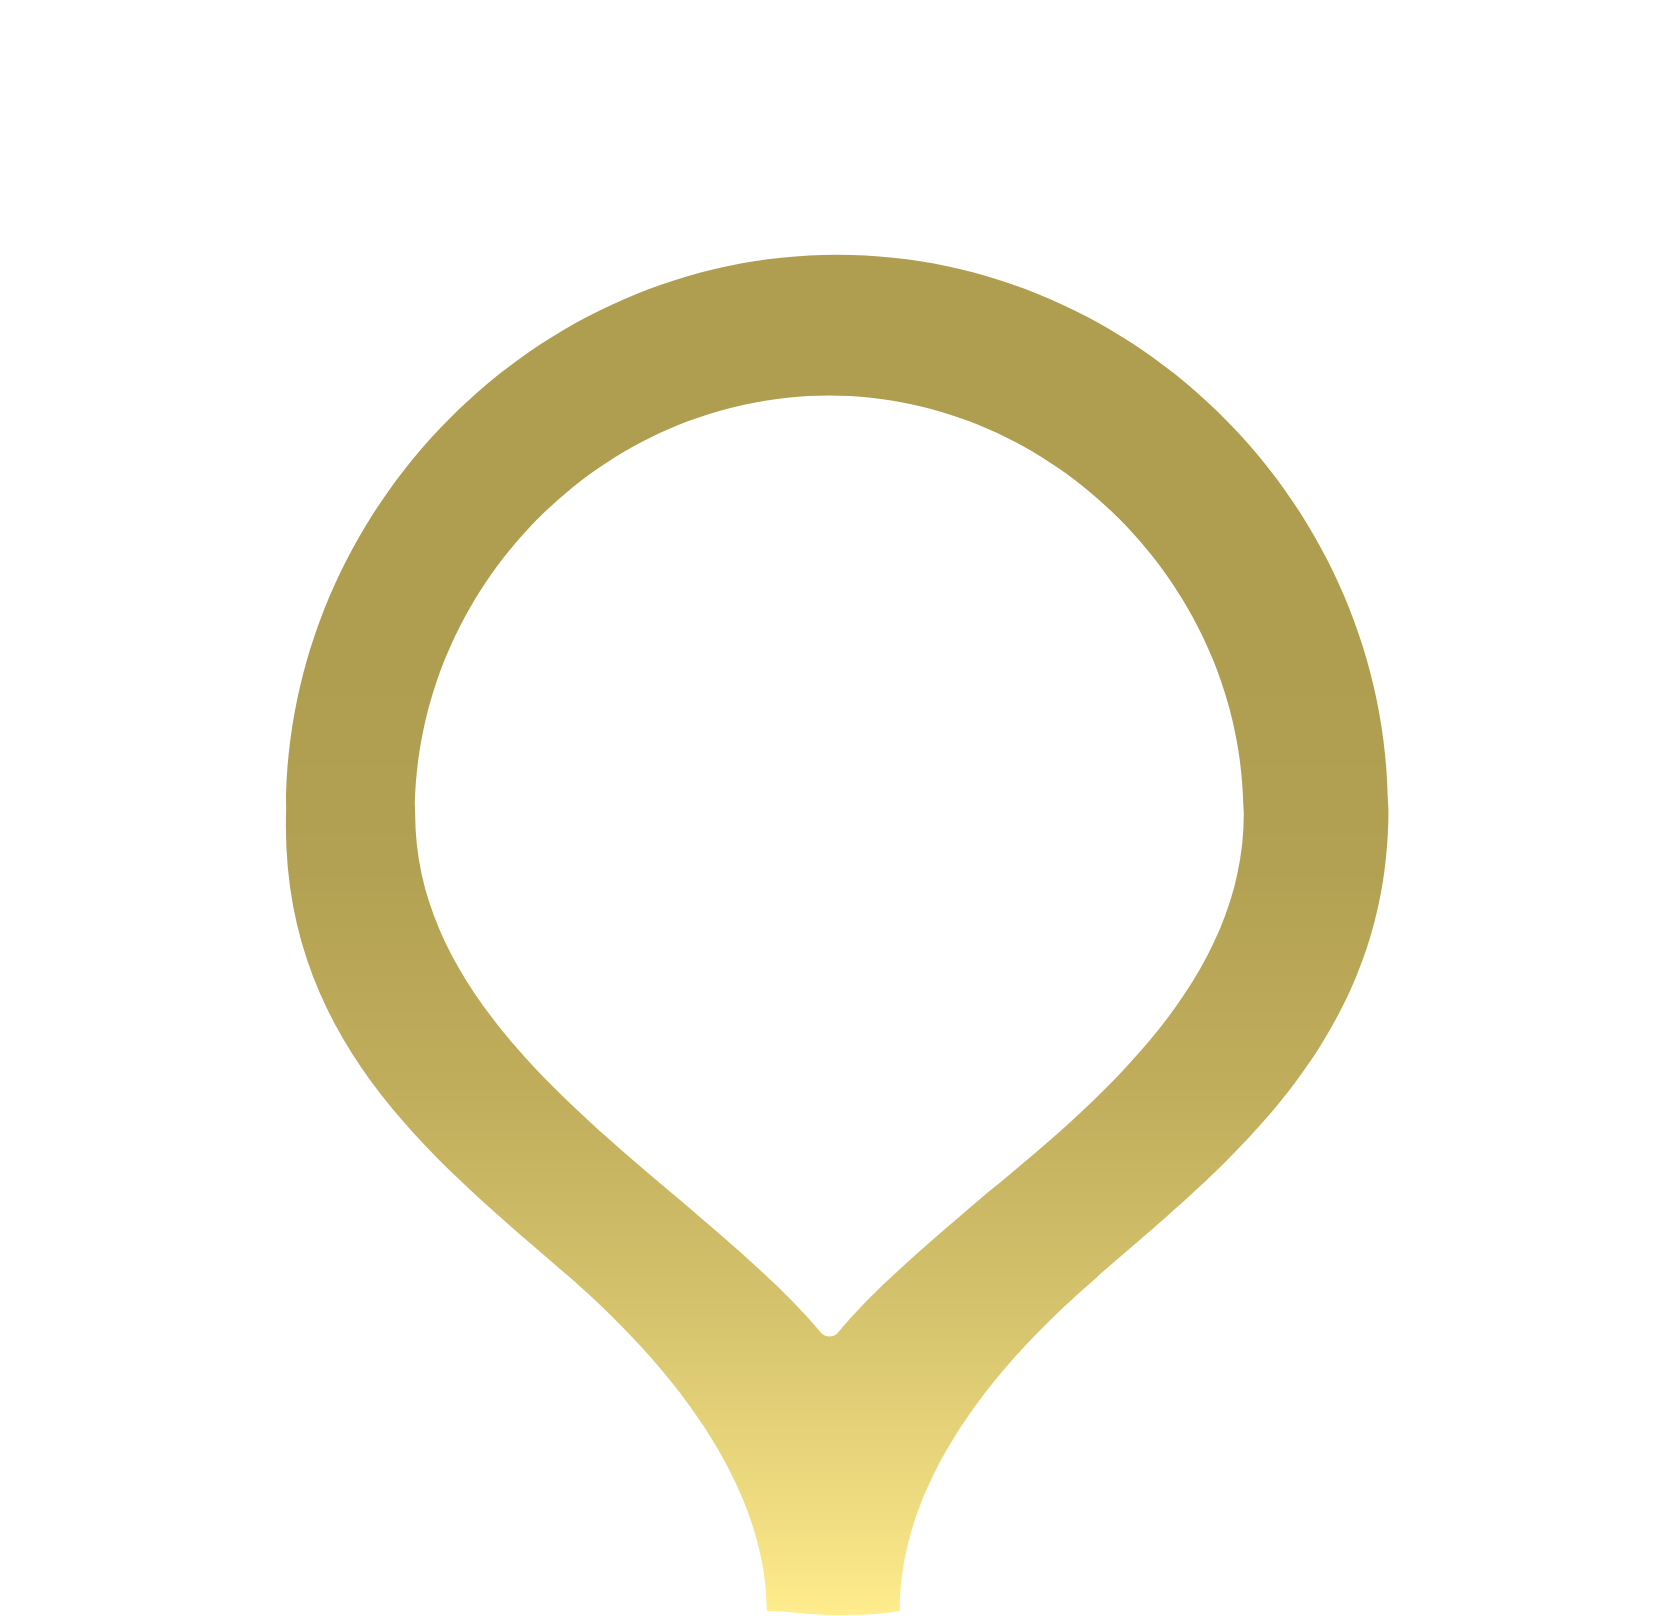 Sandstorm Gold logo for dark backgrounds (transparent PNG)